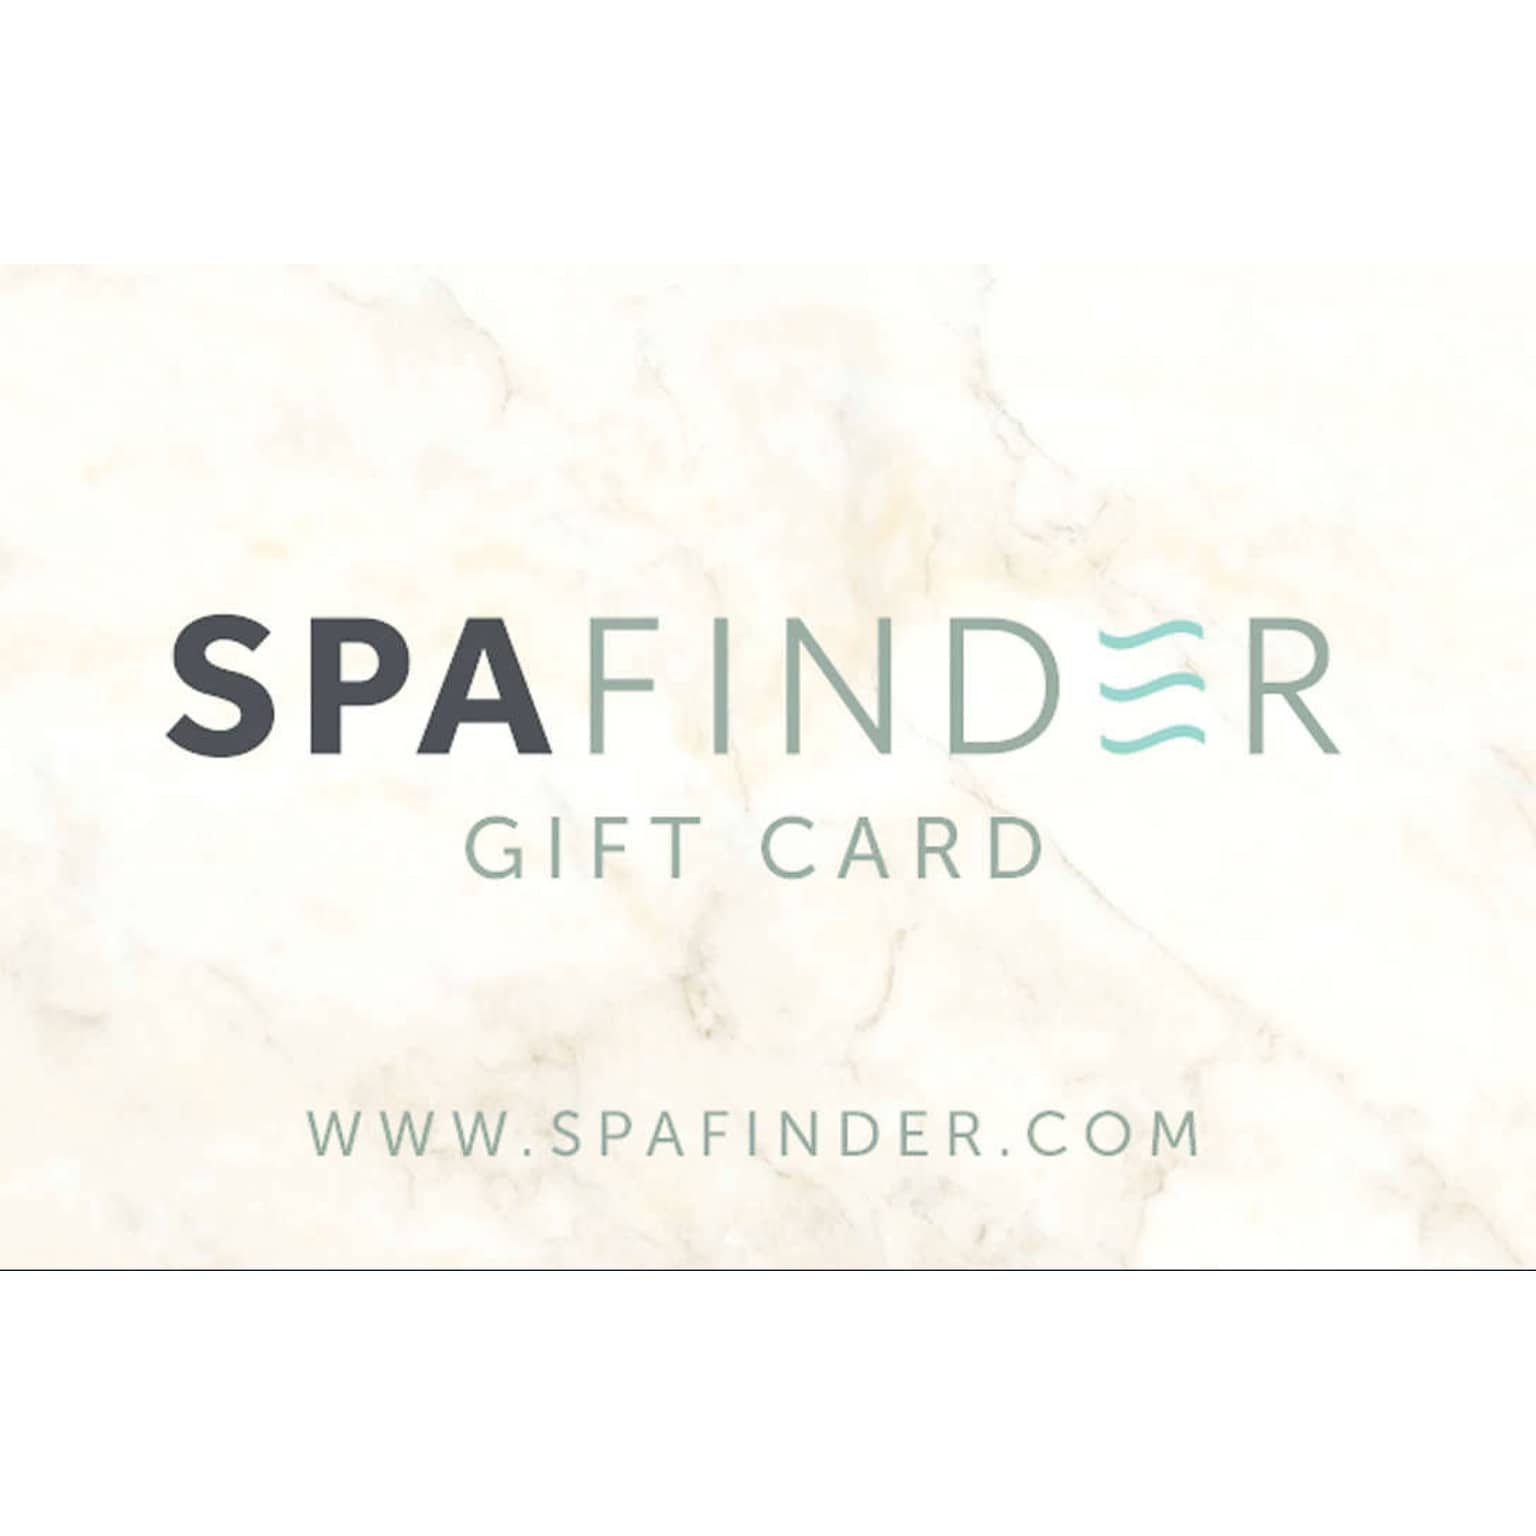 Spafinder Gift Card $50